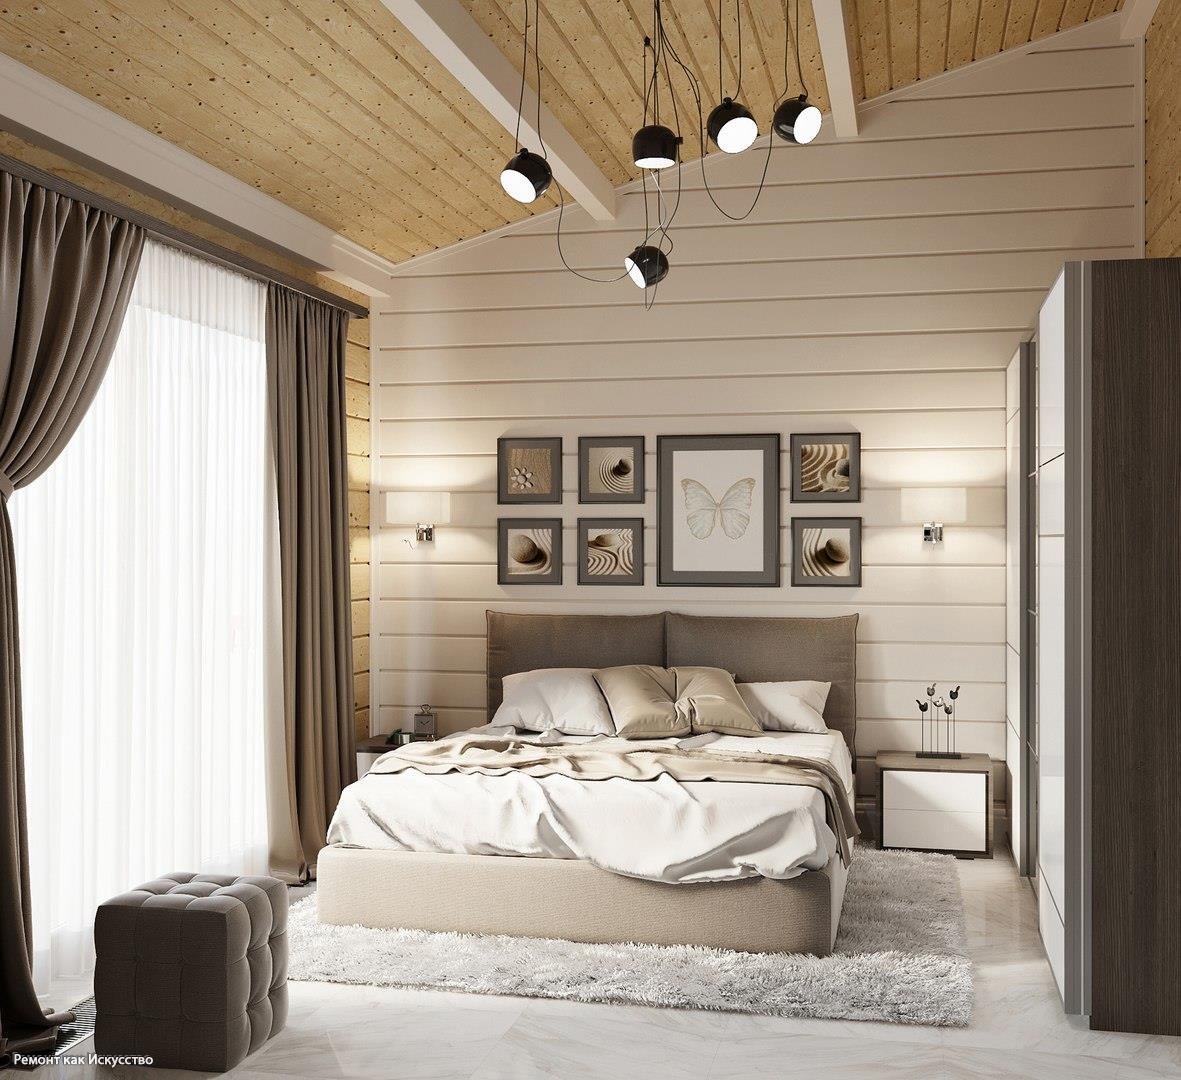 Интерьер спальни в деревянном доме (65 фото)